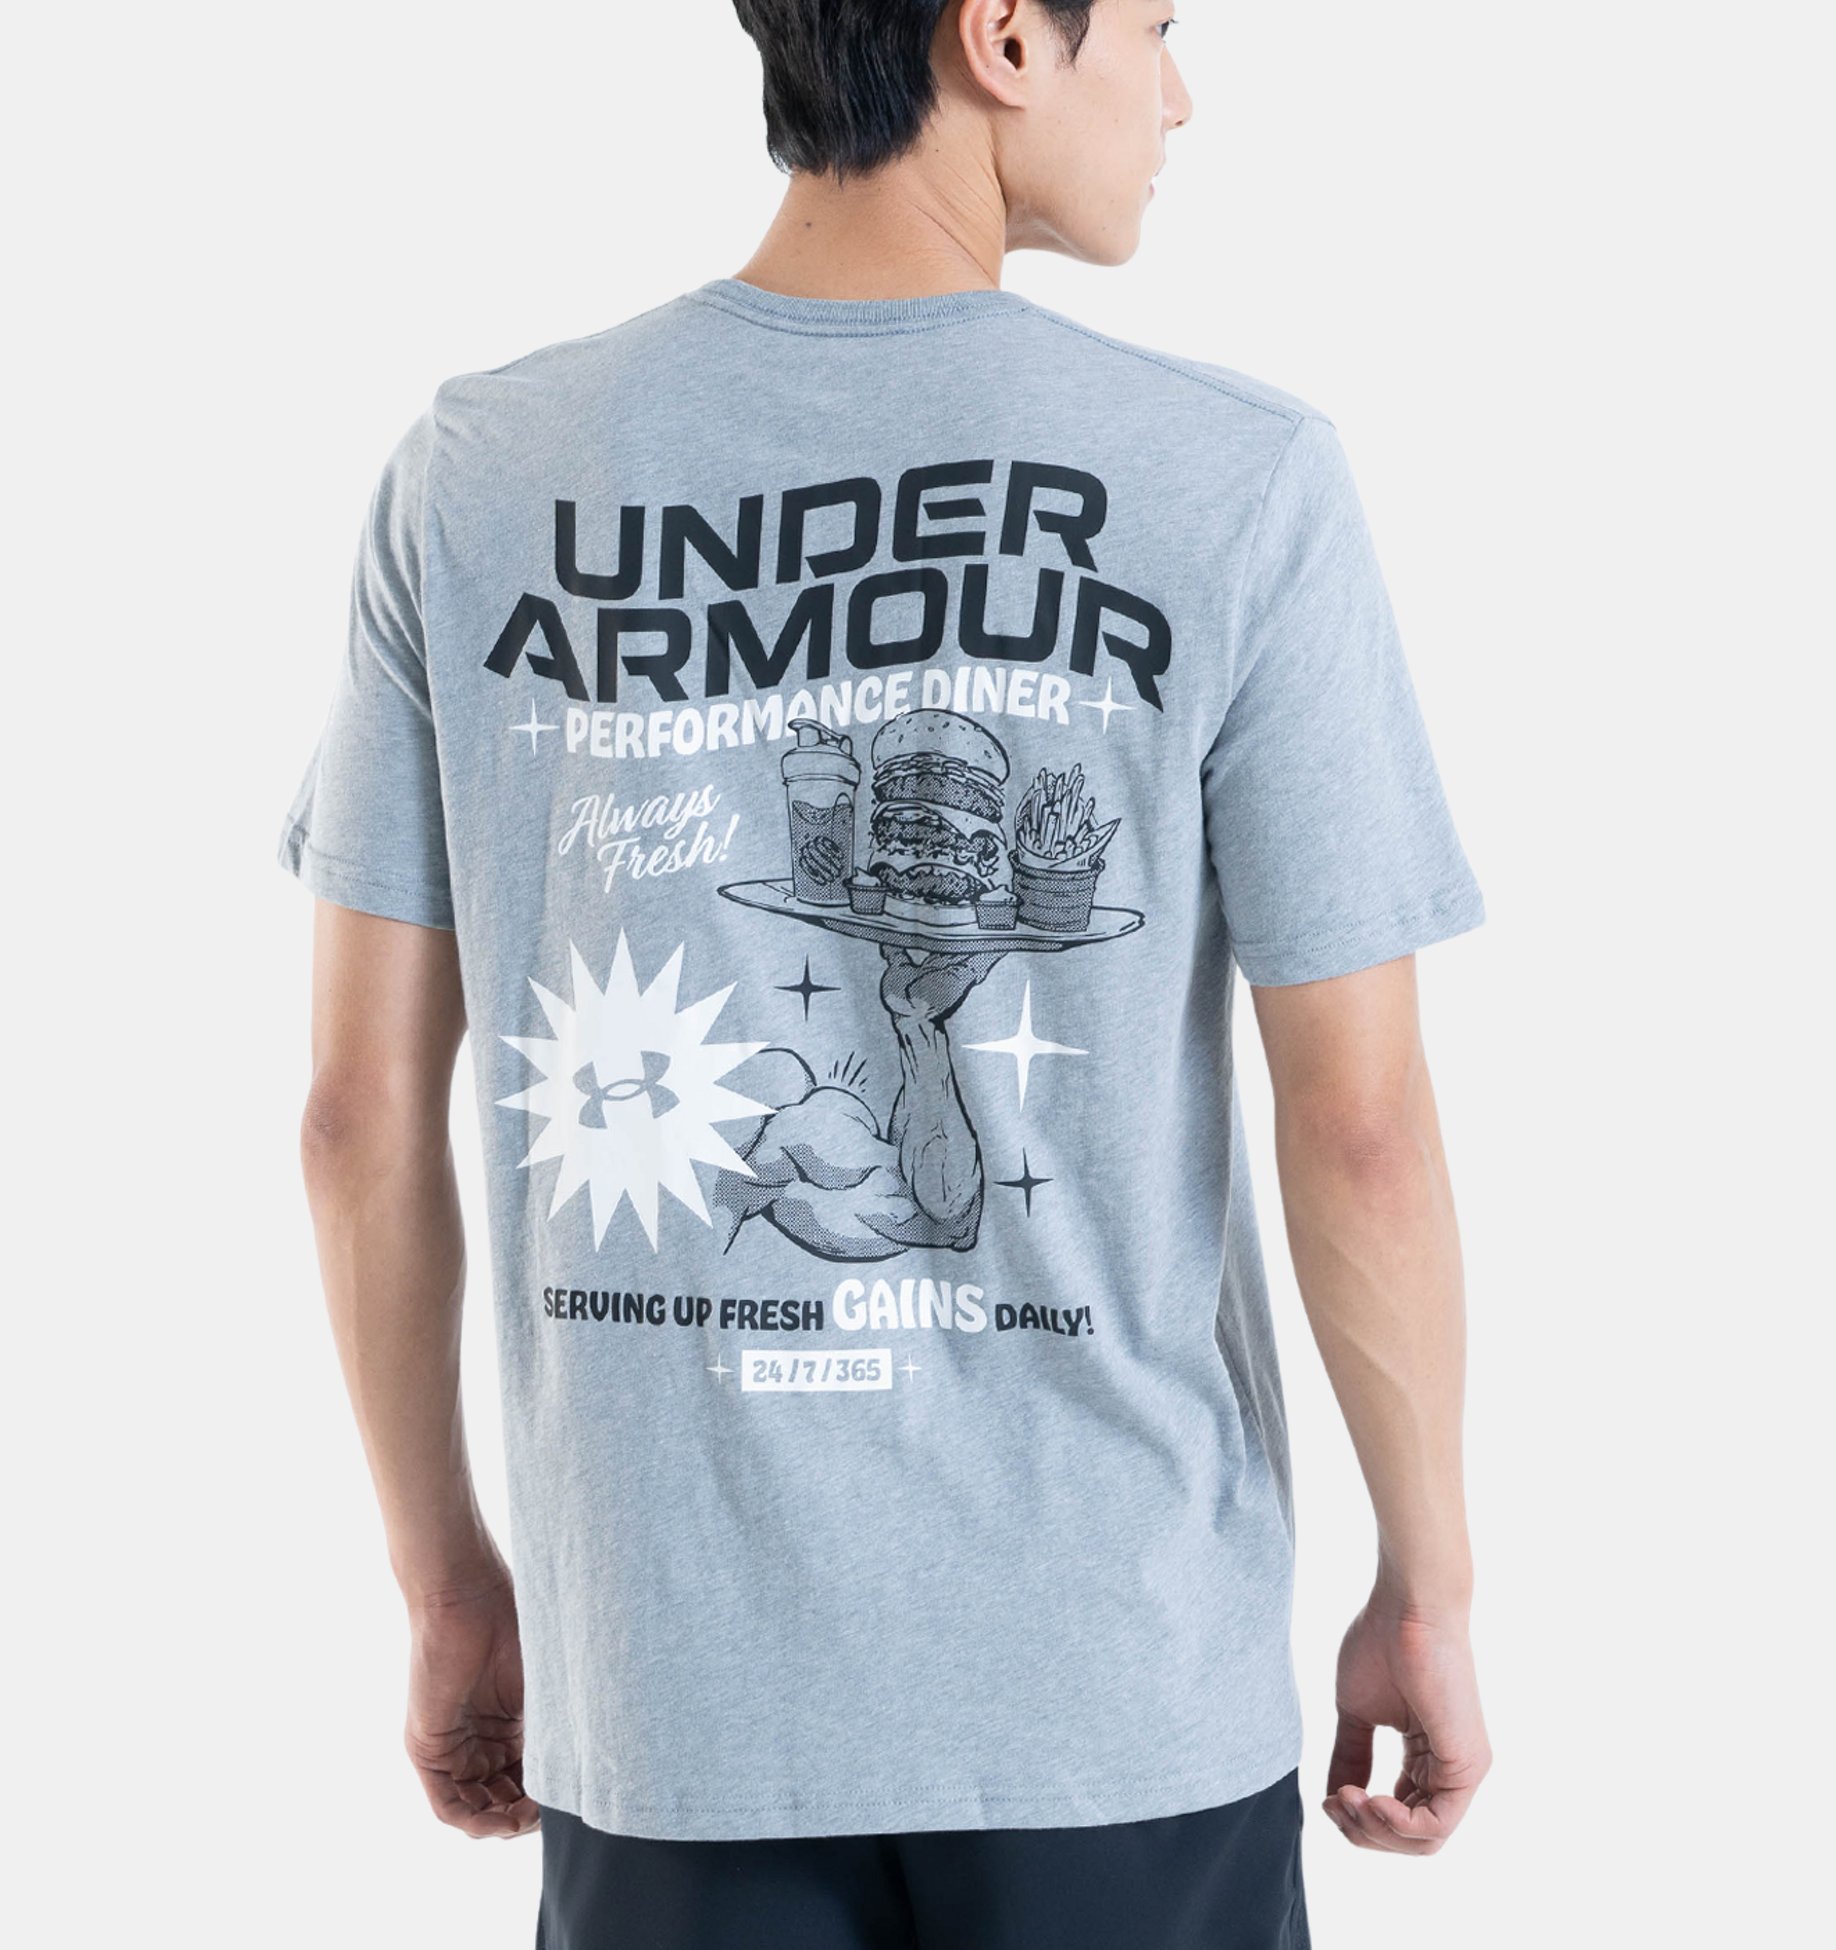 T-shirt under armour 13295882015 - GT Sport